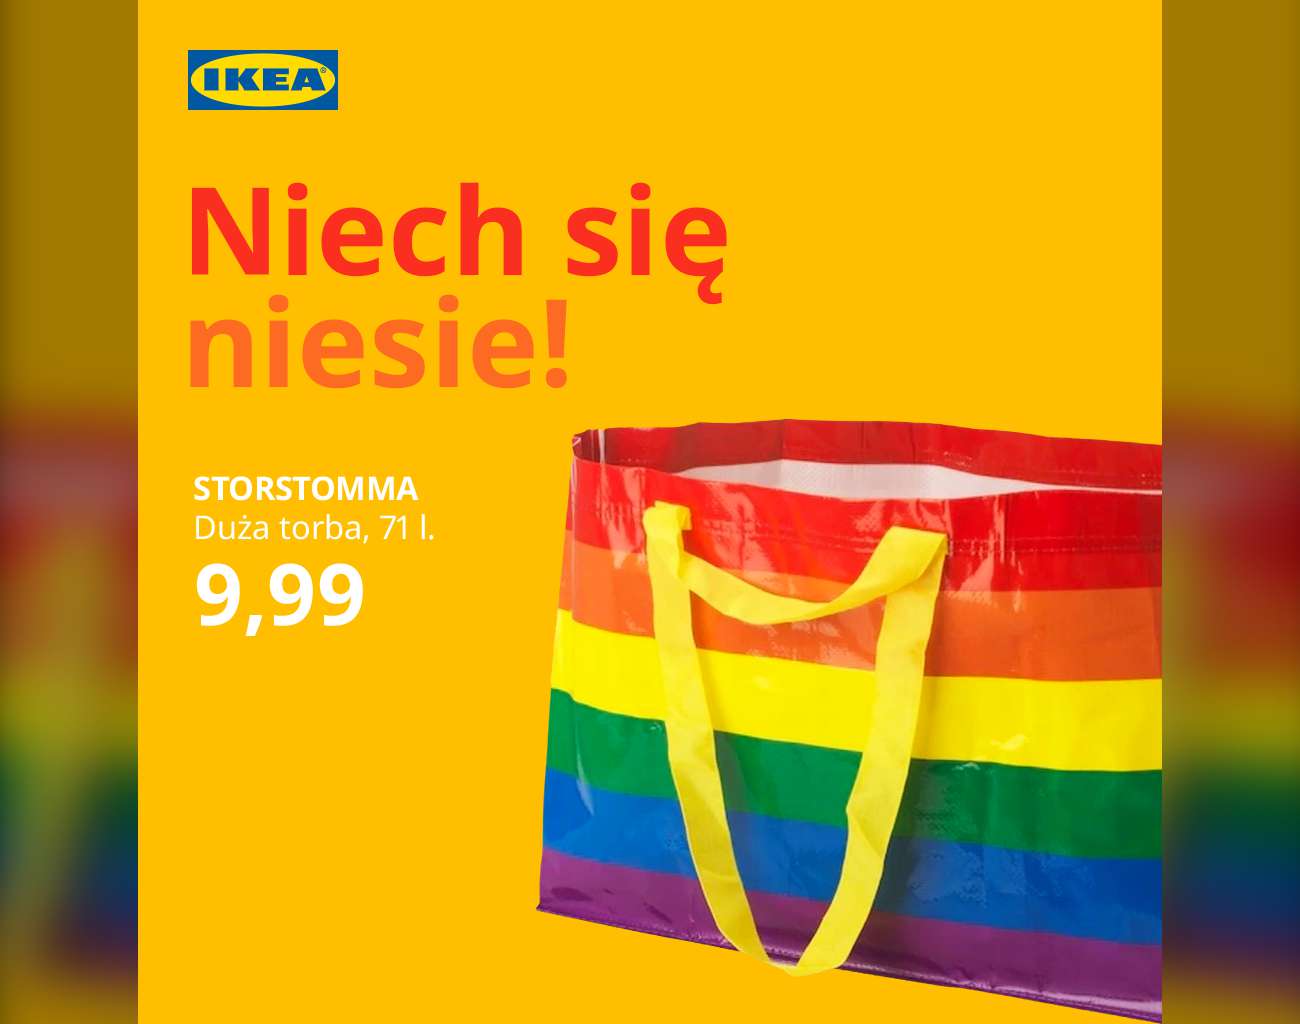 Facebook.com / IKEA.